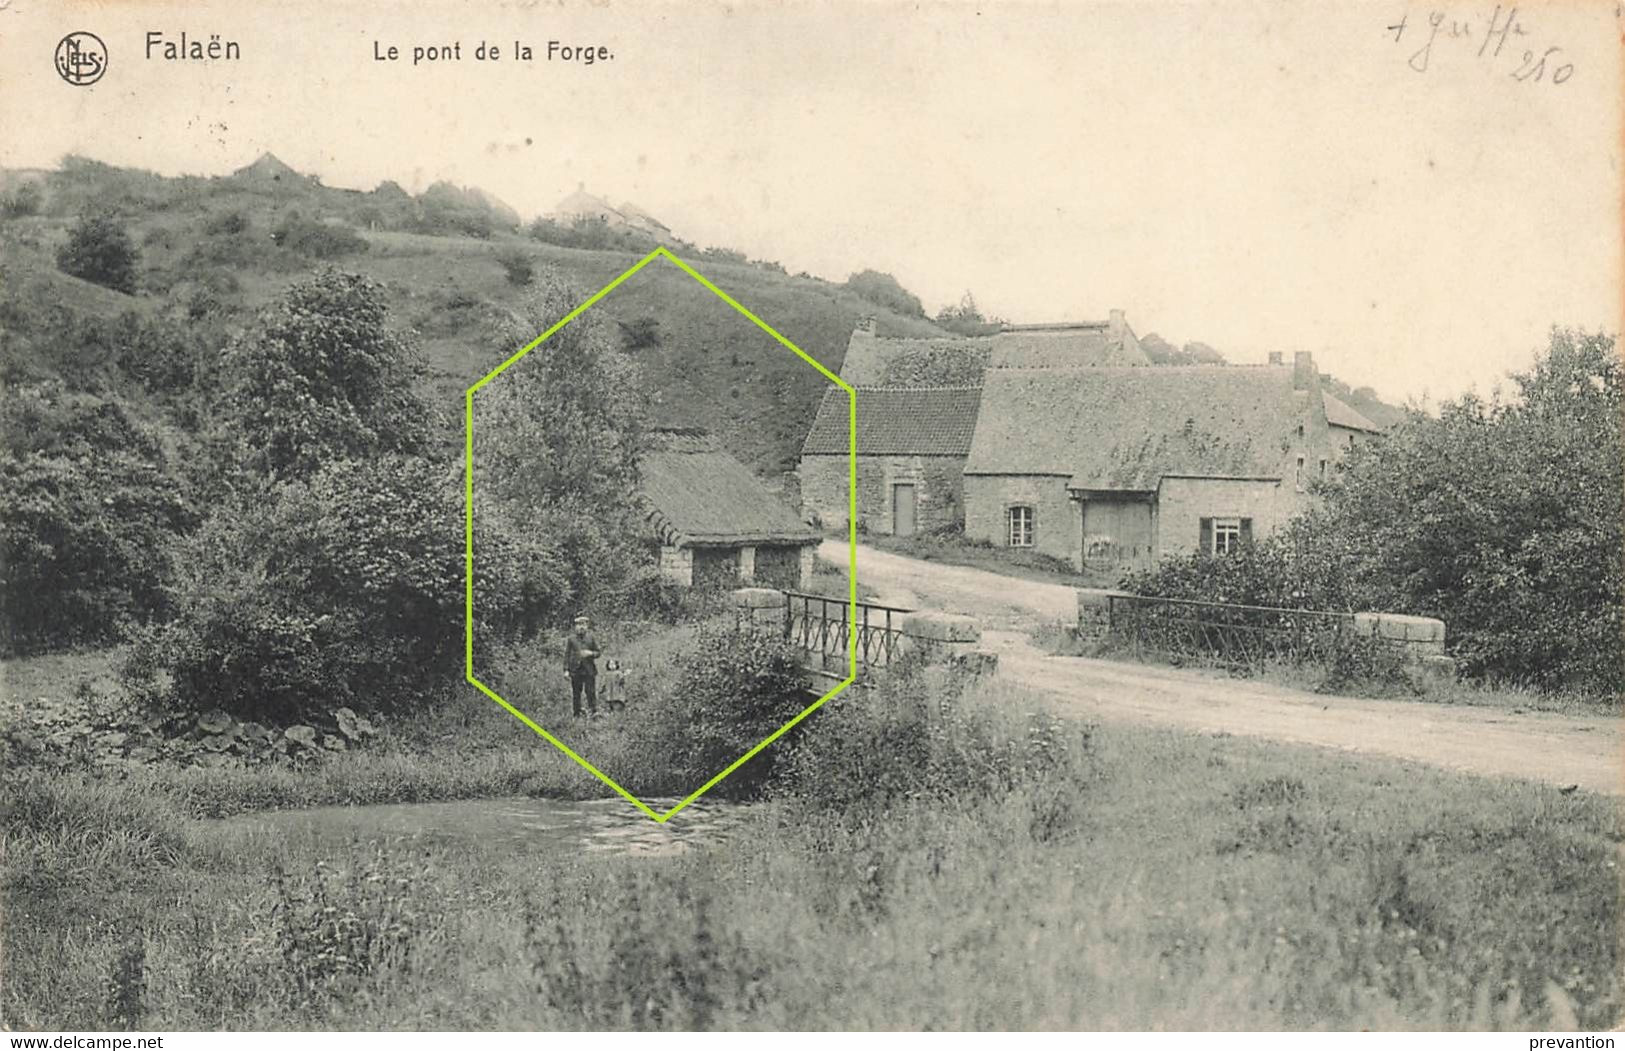 FALAËN - Le Pont De La Forge - Carte Circulé En 1913 - Onhaye